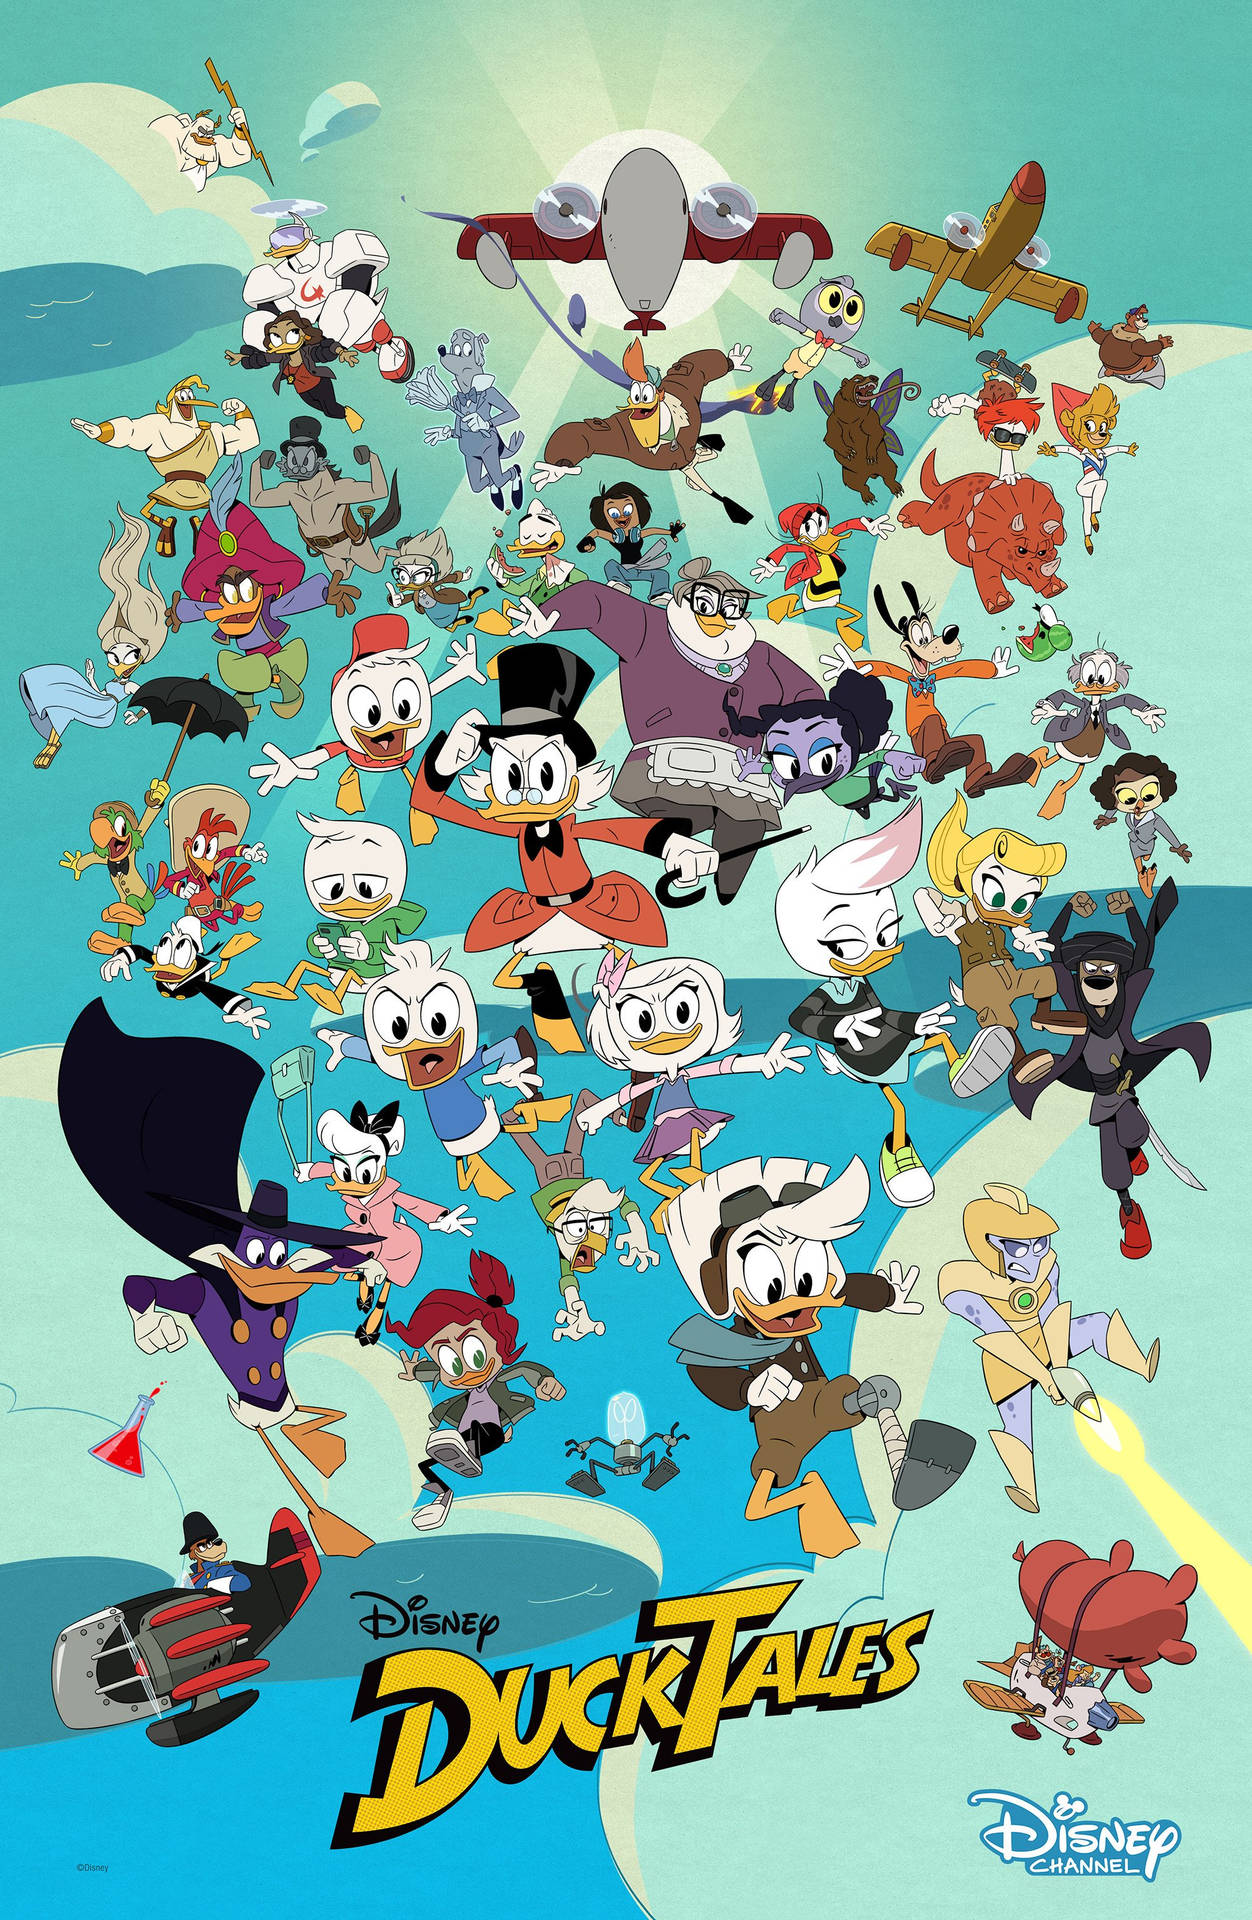 Disney’s Ducktales Background